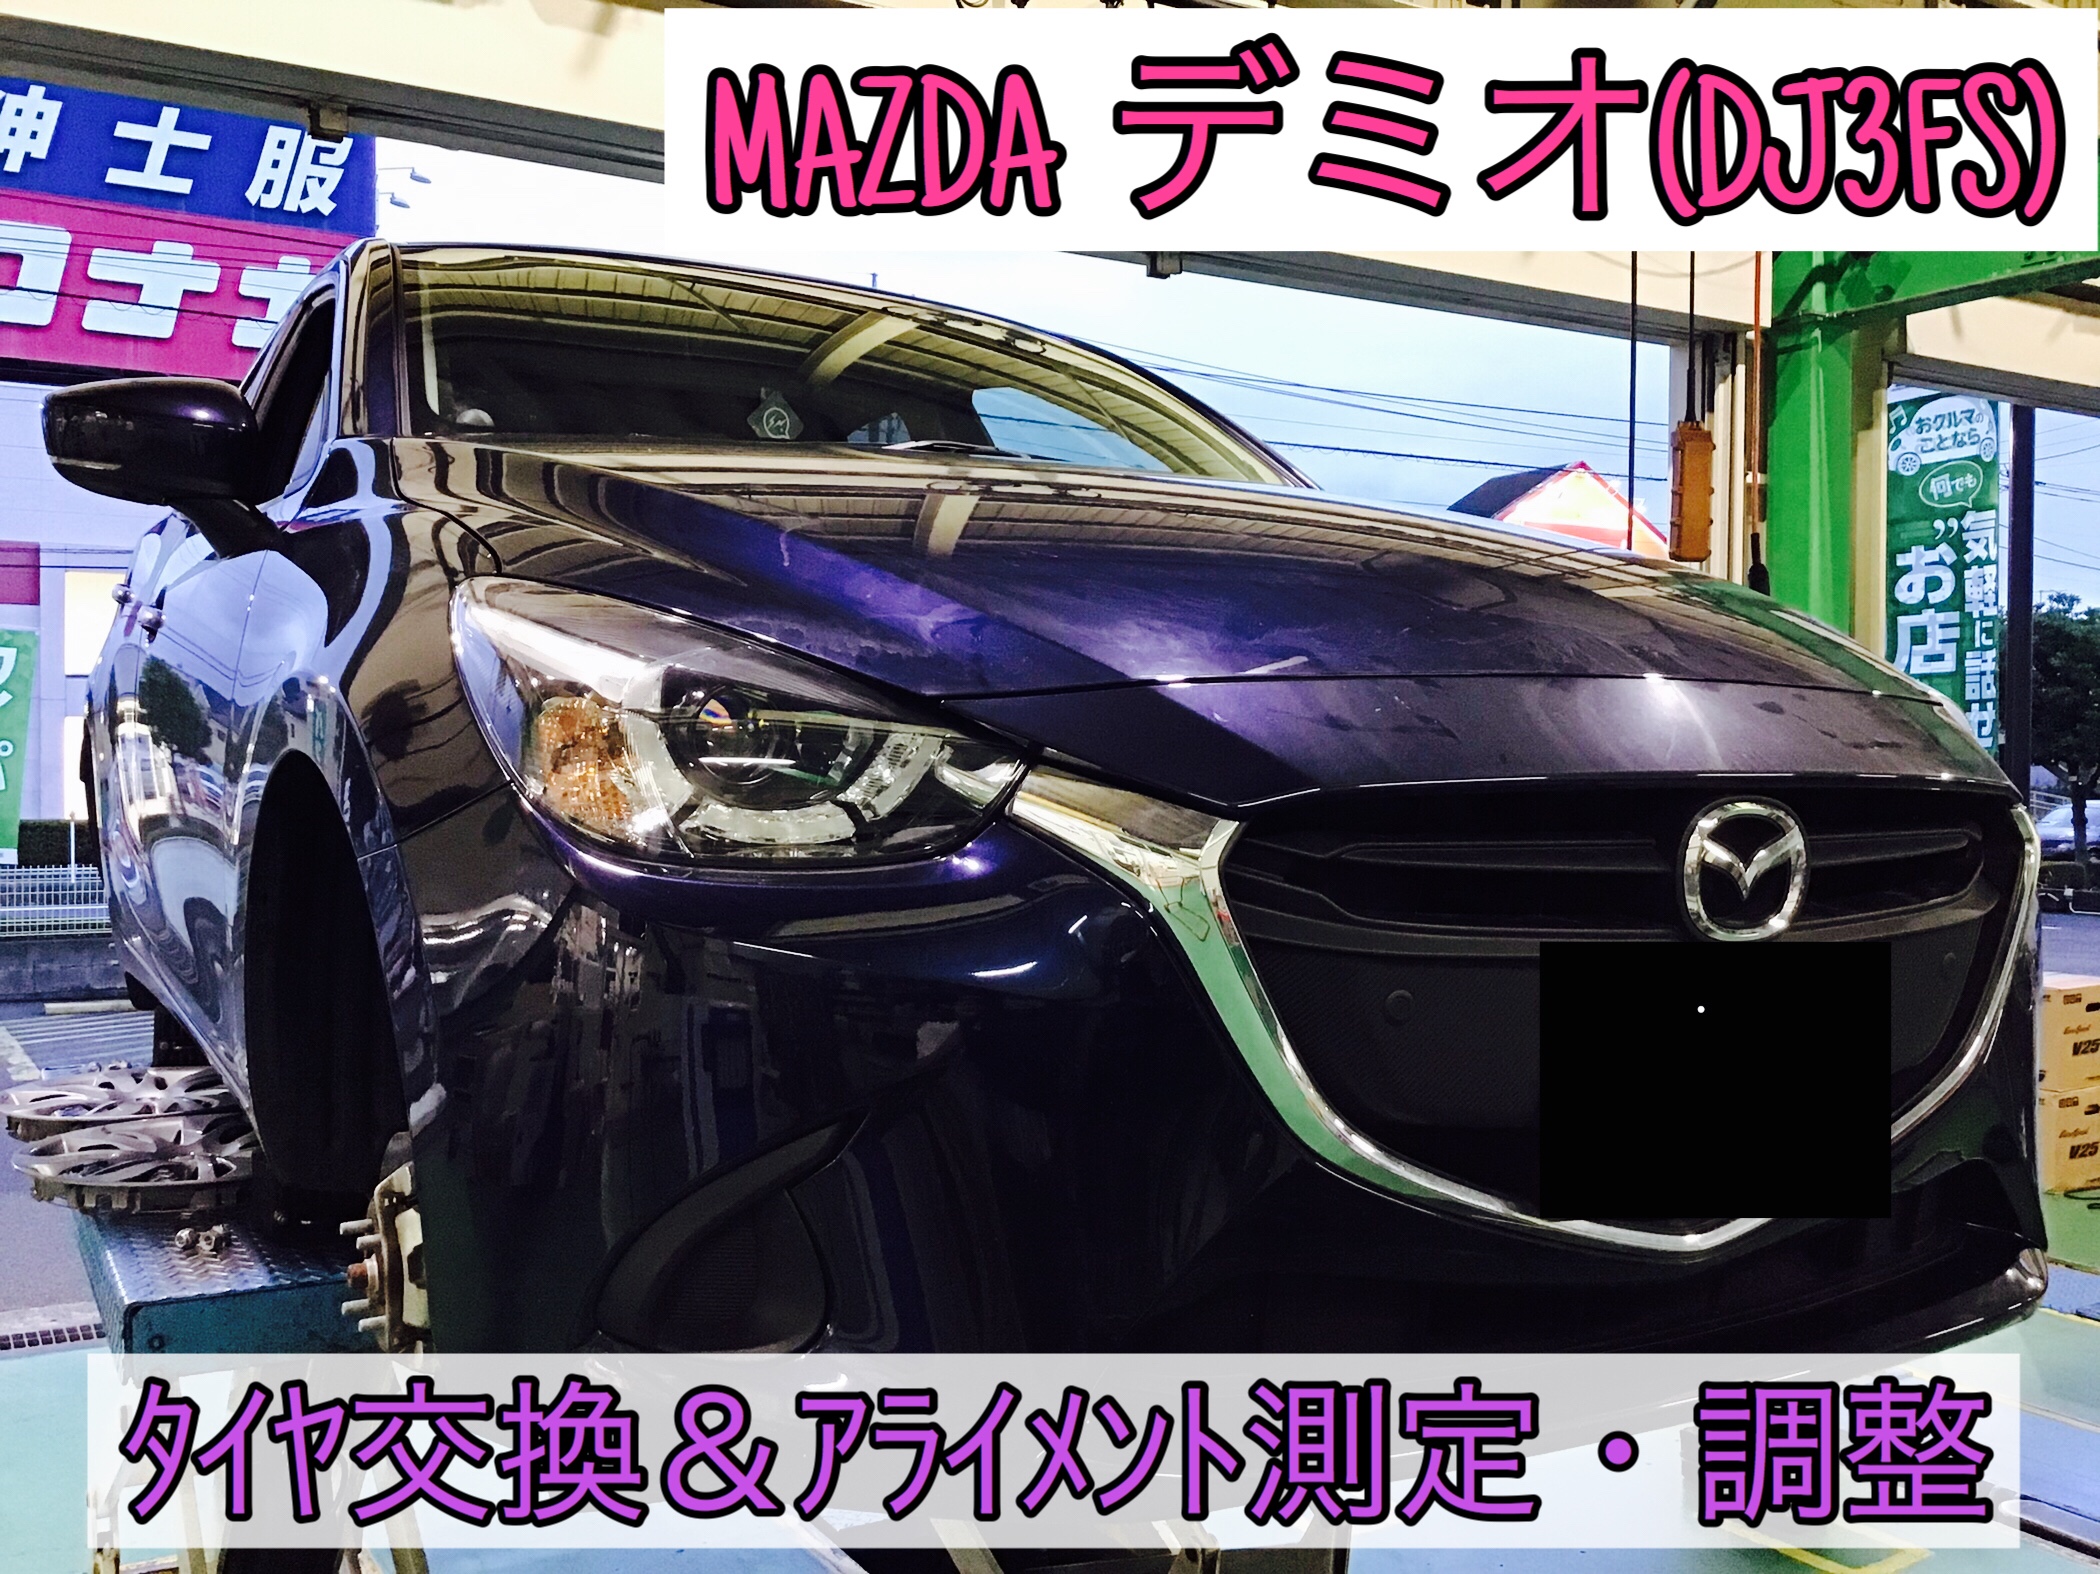 MAZDA デミオ(DJ3FS)】 タイヤ4本交換＆アライメント測定・調整